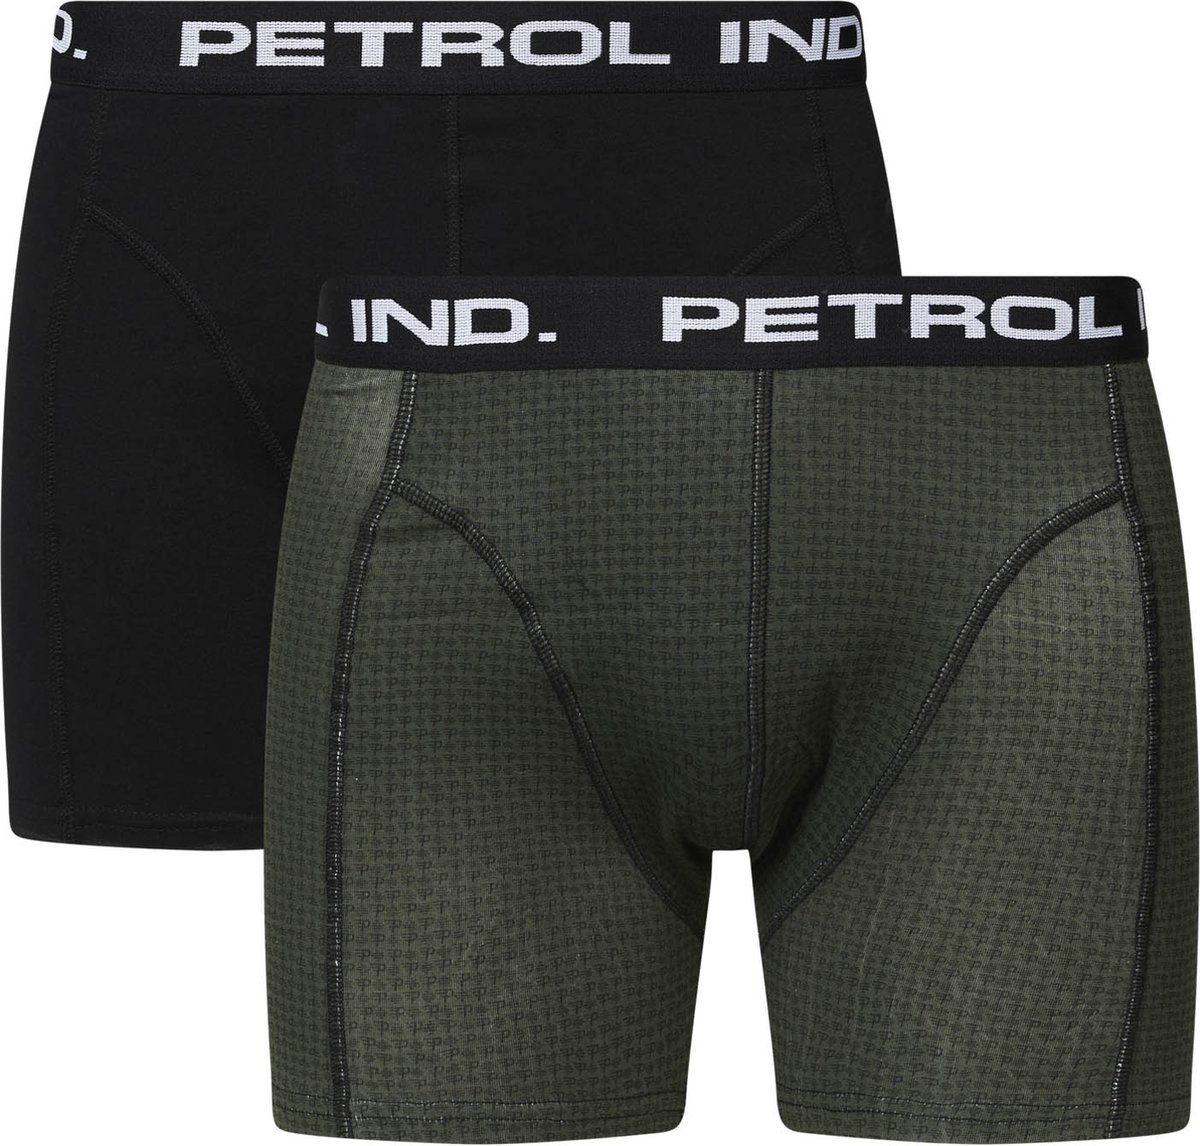 Petrol Onderbroek - Petrol Industries - 2-pack Boxershorts - Zwart - Groen met print